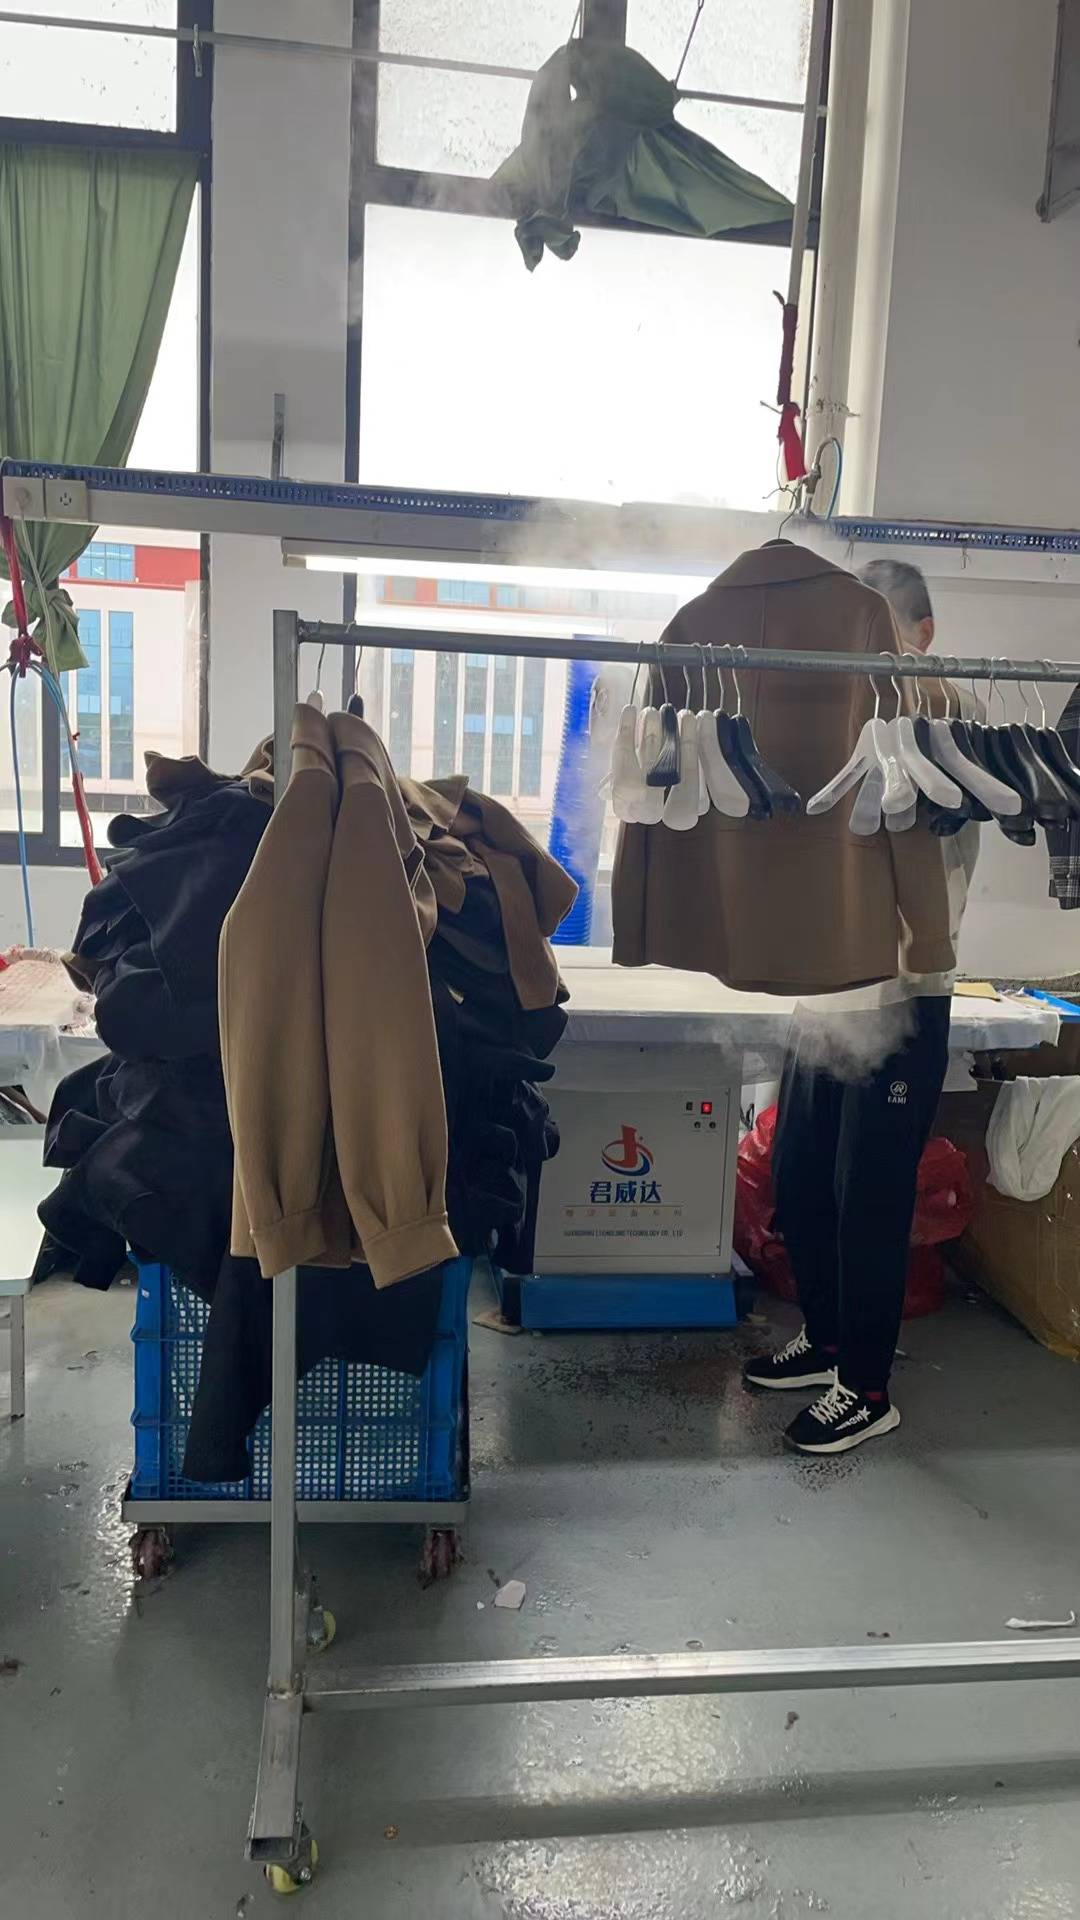 江苏省昆山市巴城镇美博羊绒大衣,专业打造羊绒服装,高品质!